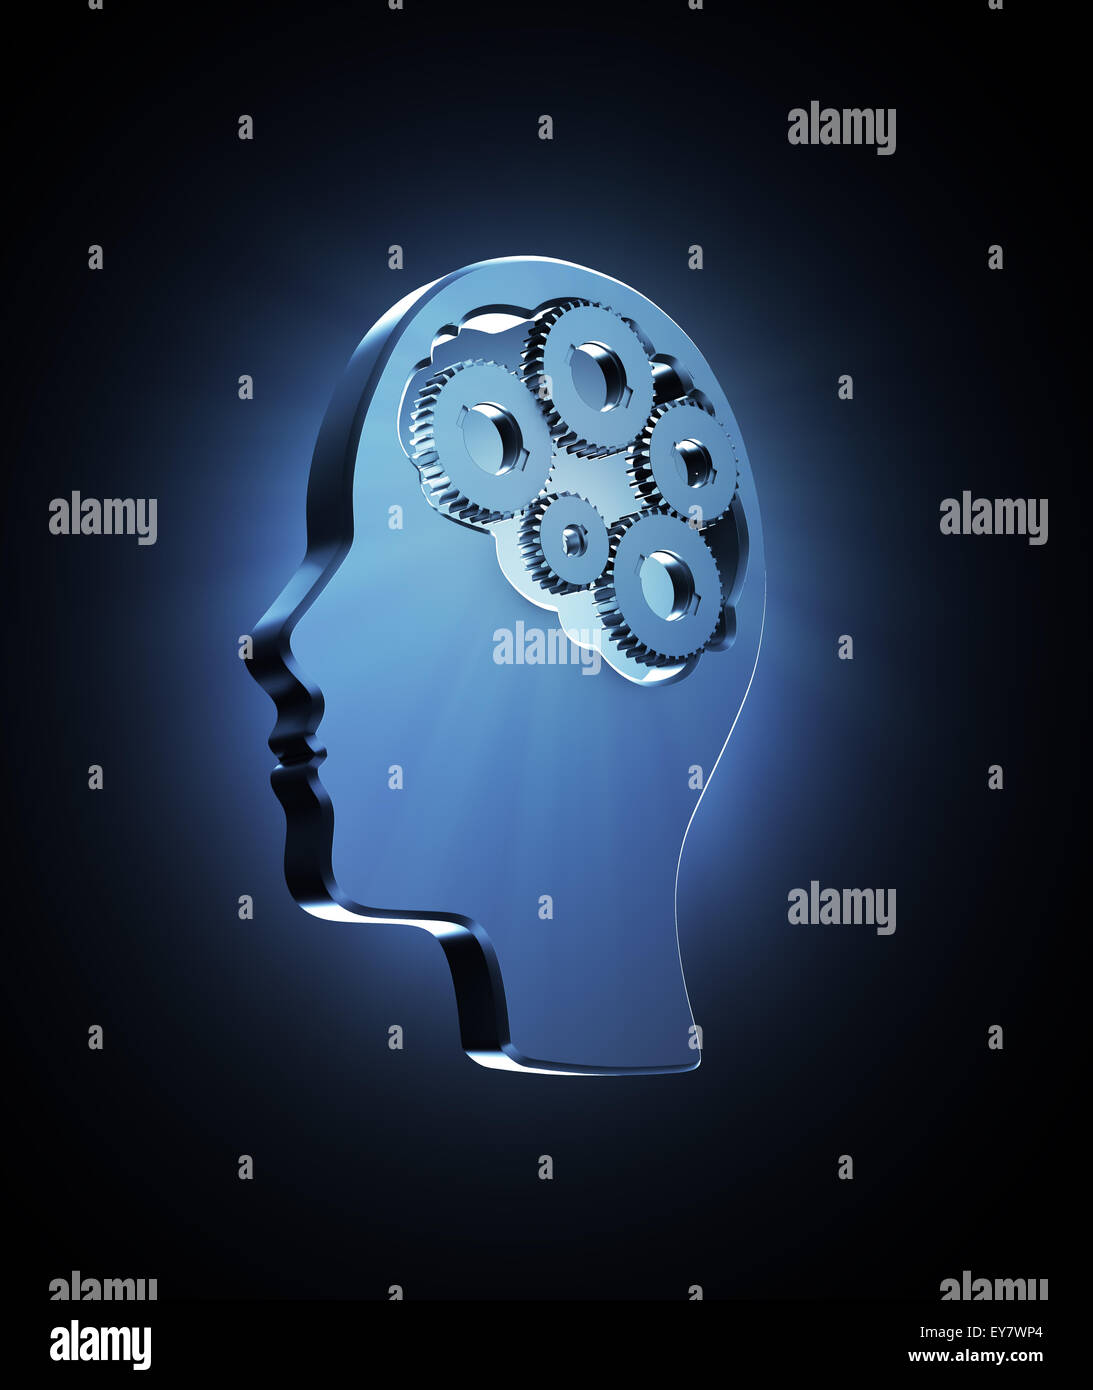 Zahnräder innerhalb einer menschlichen Kopf Outline - Gedächtnis und kognitive Funktionen Konzept illustration Stockfoto